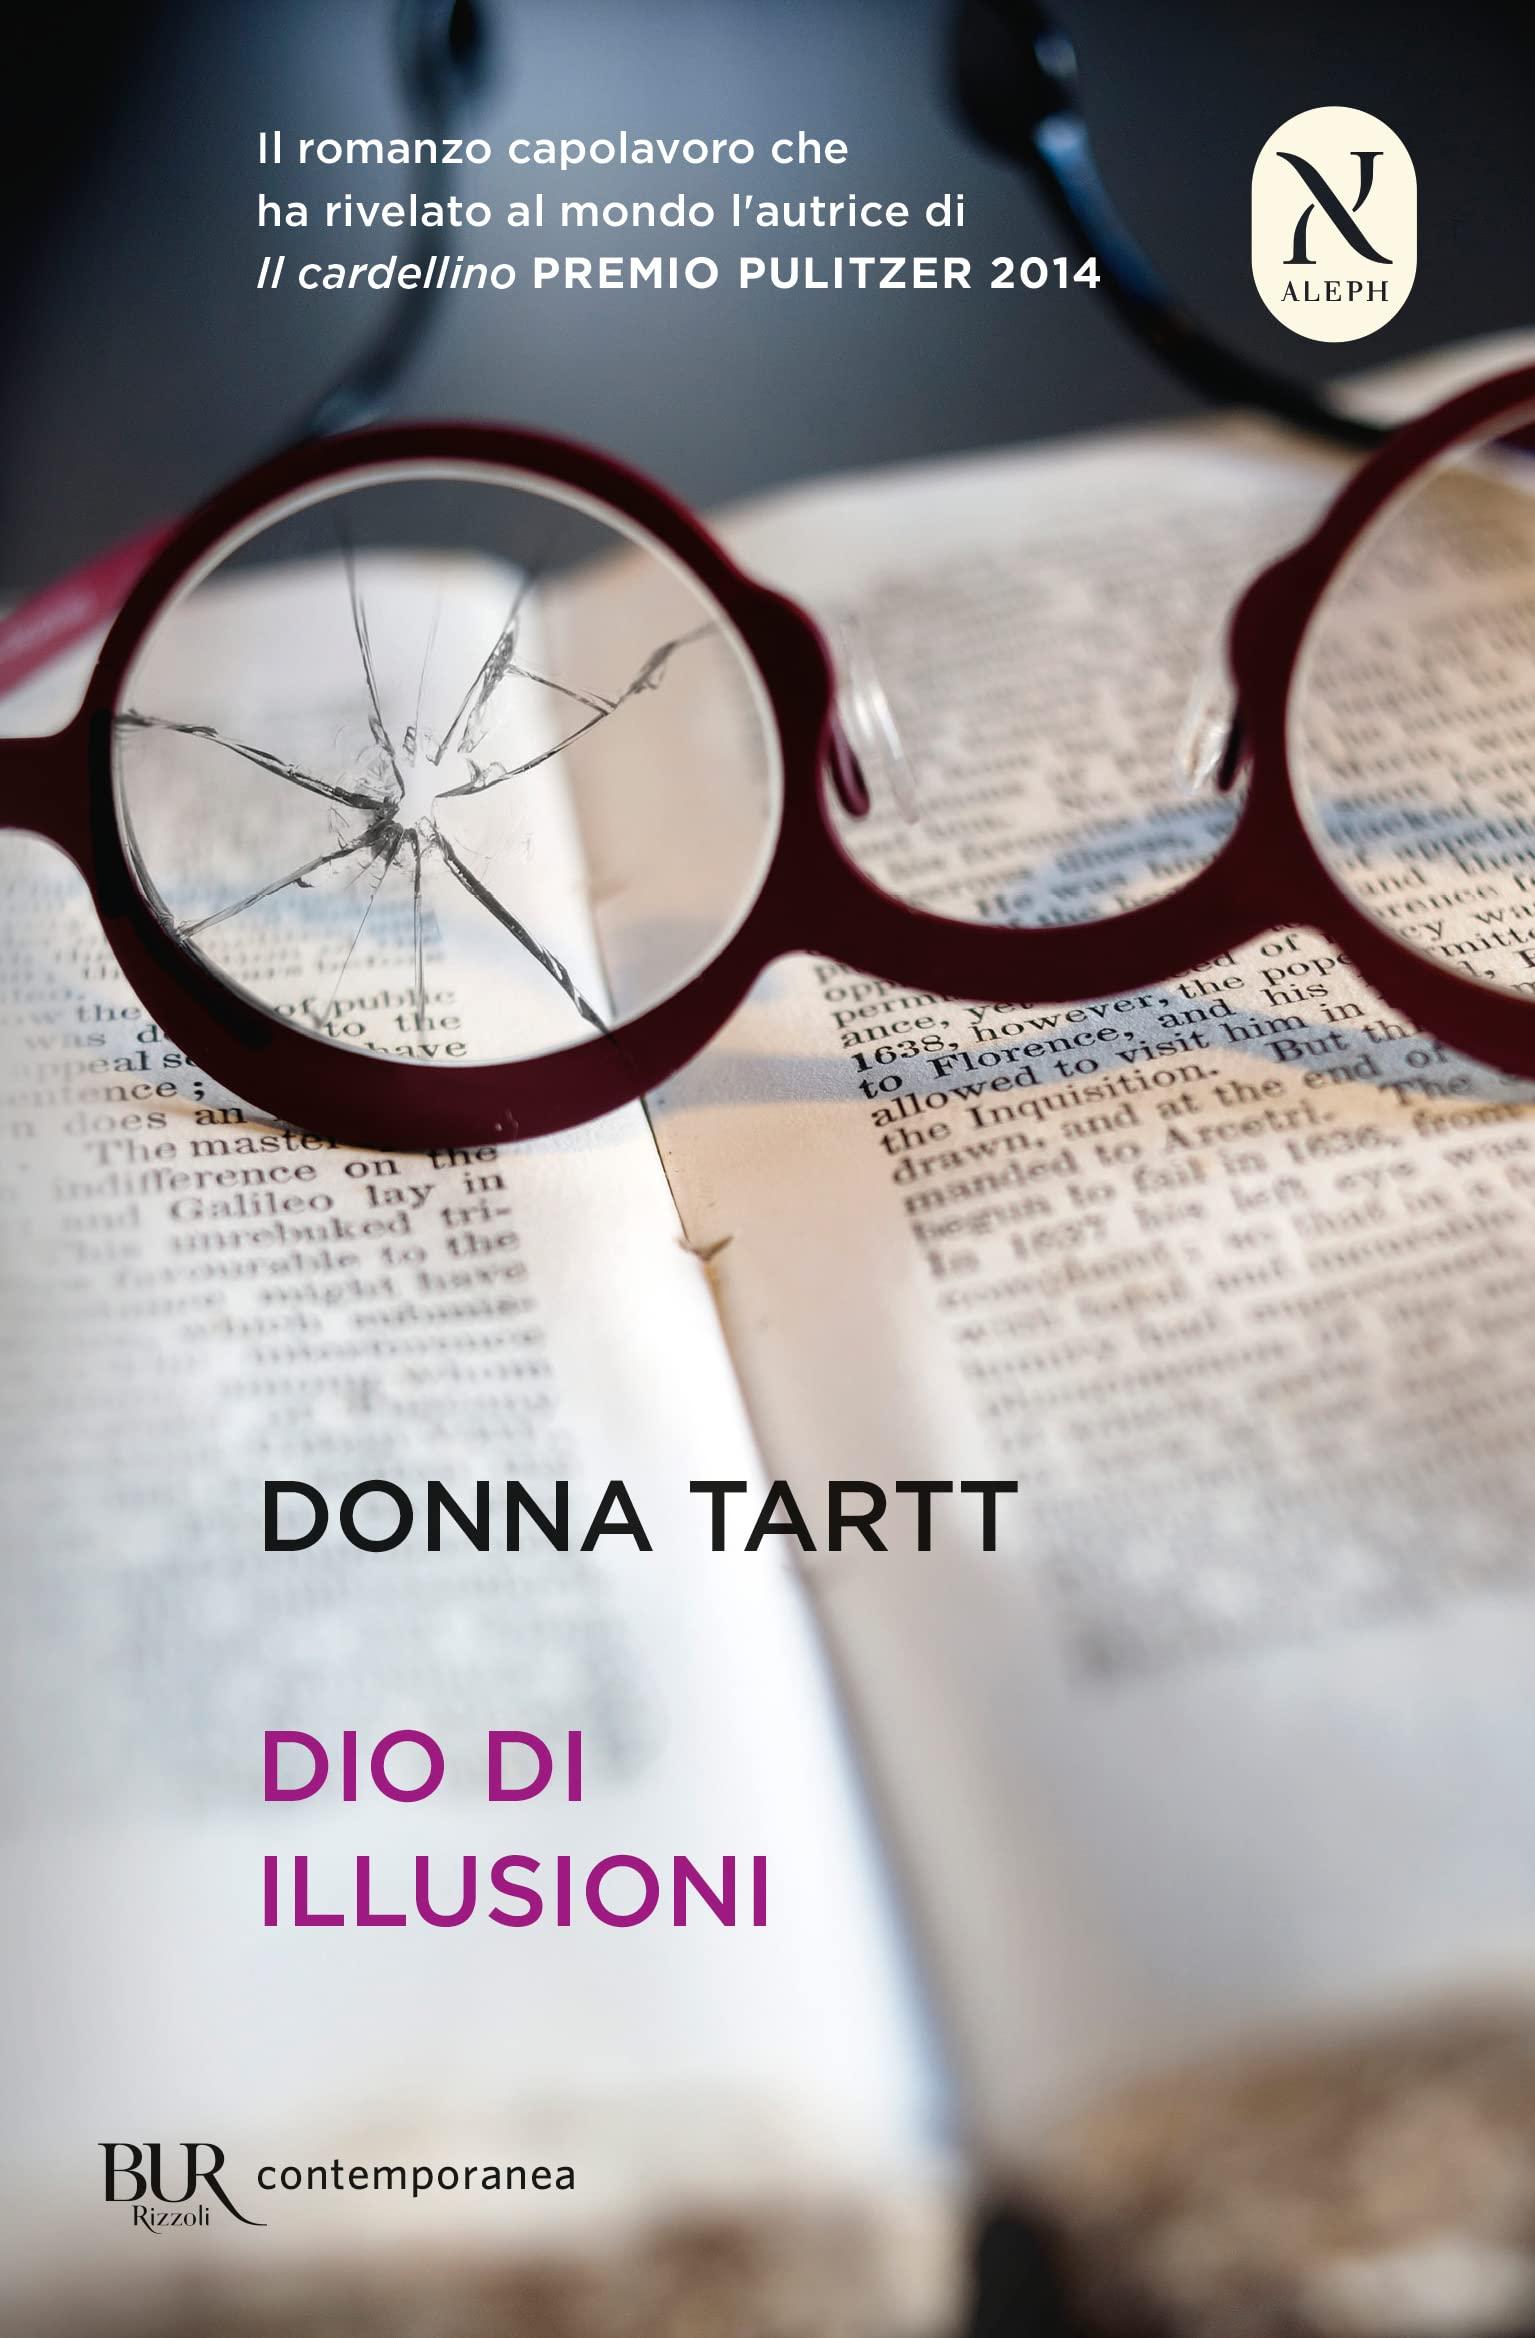 Libro "Dio di illusioni" di Donna Tartt